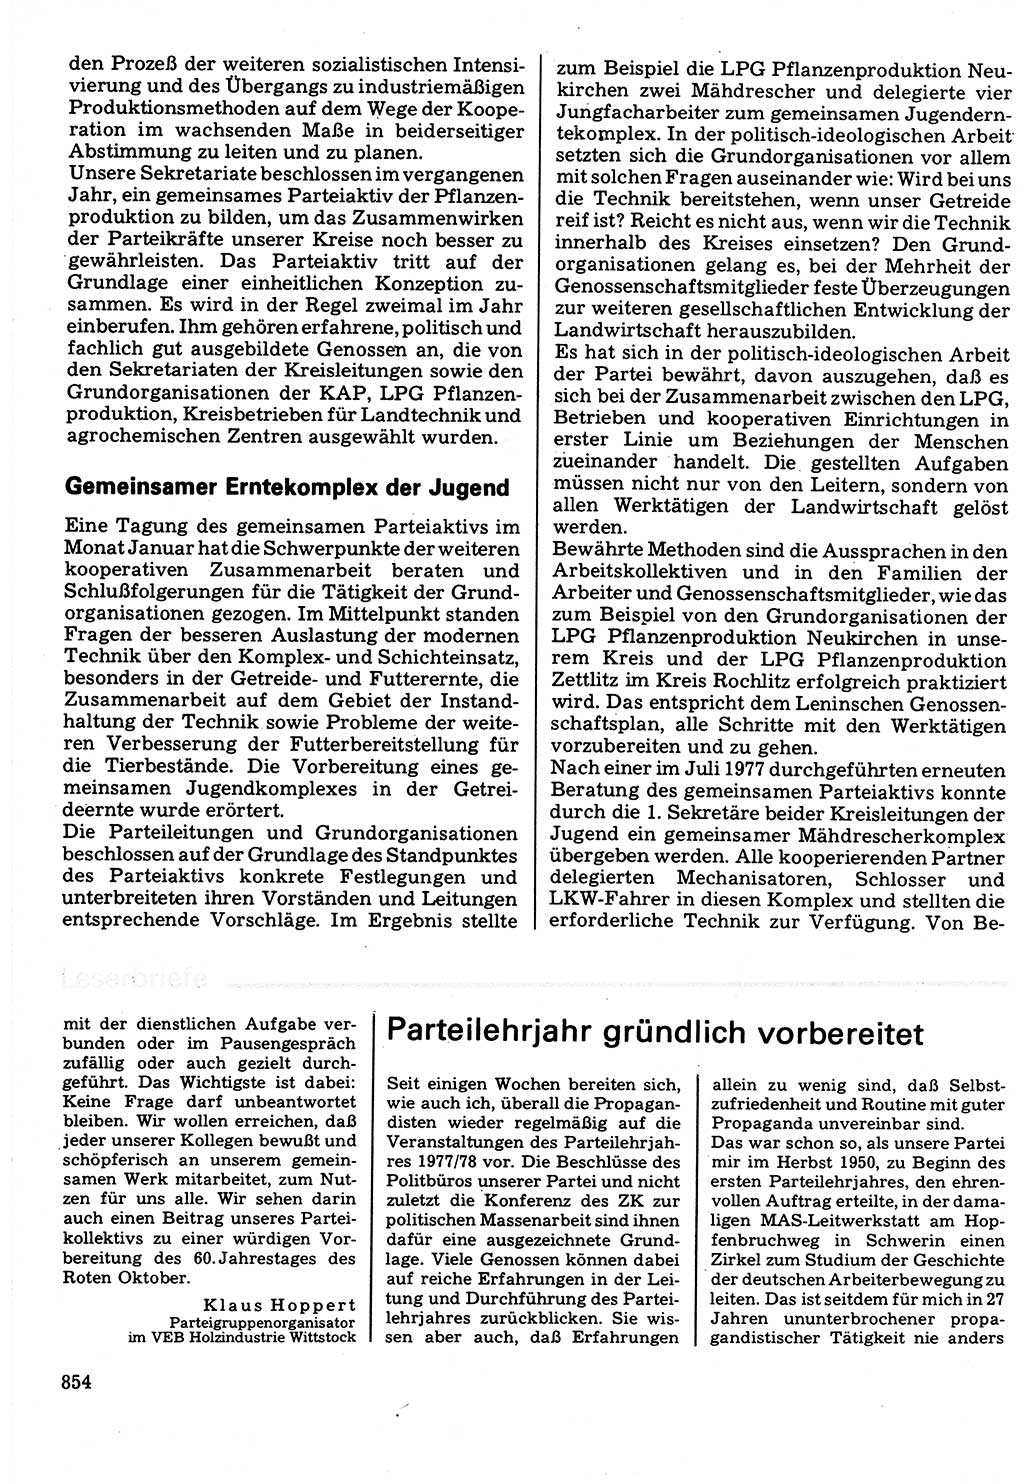 Neuer Weg (NW), Organ des Zentralkomitees (ZK) der SED (Sozialistische Einheitspartei Deutschlands) für Fragen des Parteilebens, 32. Jahrgang [Deutsche Demokratische Republik (DDR)] 1977, Seite 854 (NW ZK SED DDR 1977, S. 854)